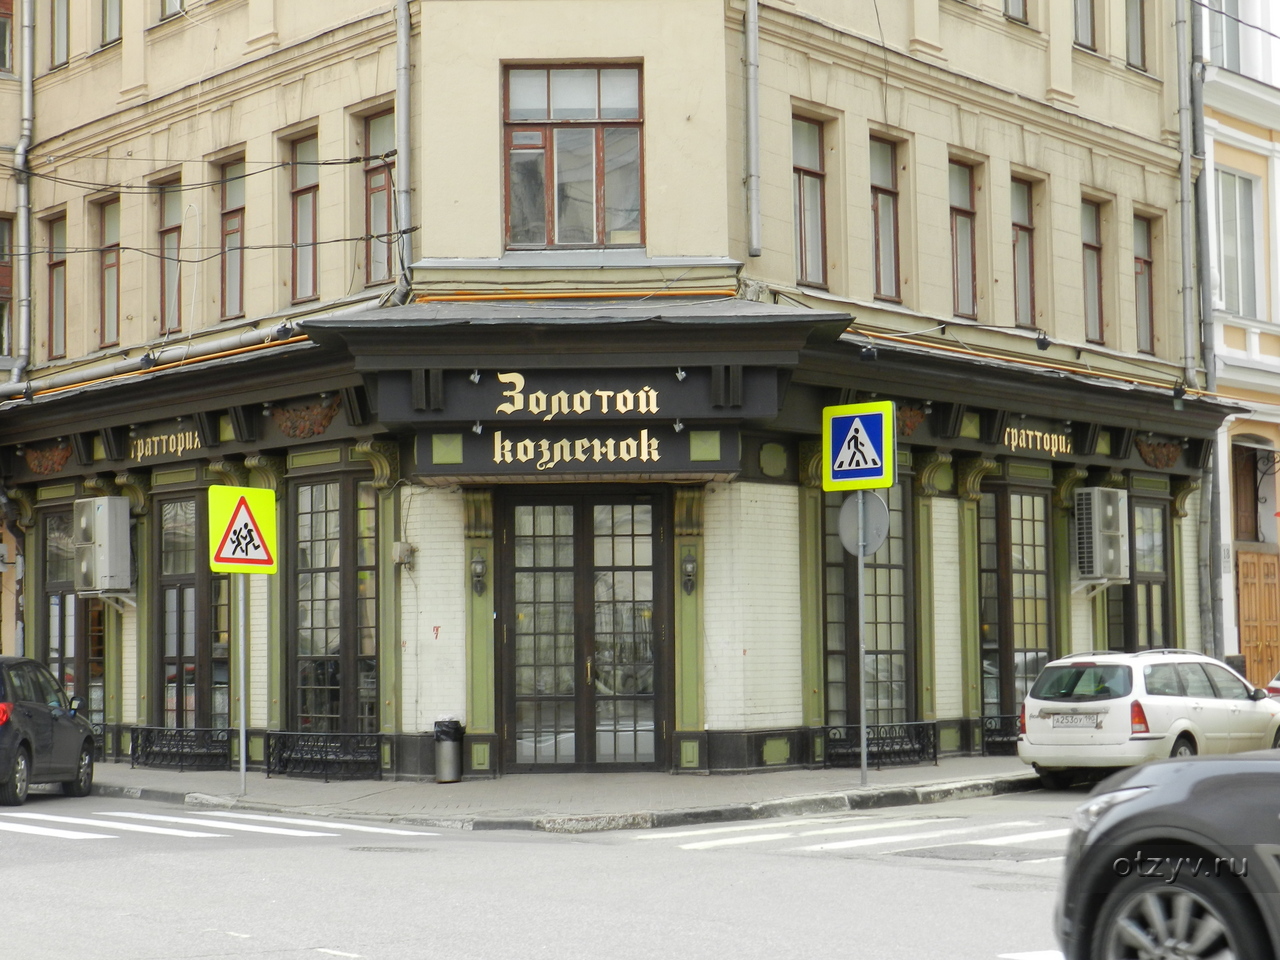 отель элеон где находится в москве адрес